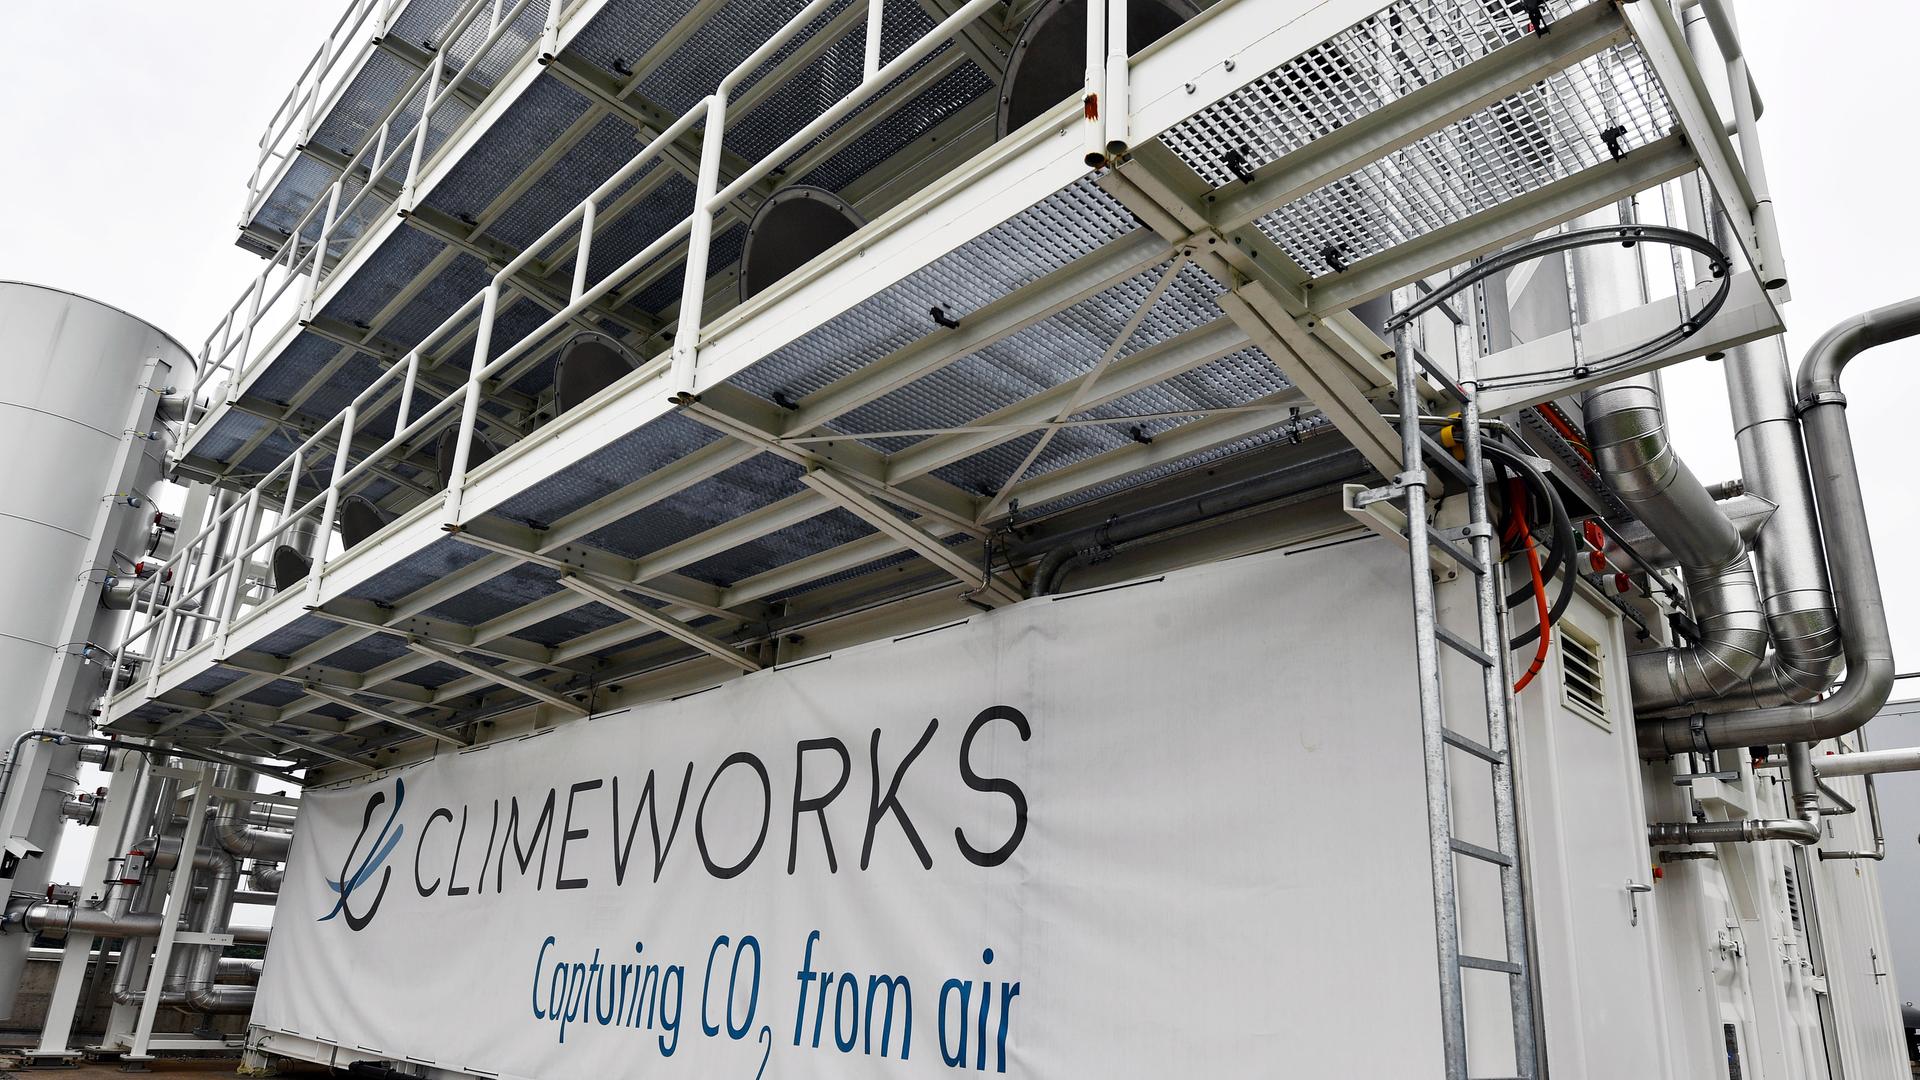 Anlagen wie diese auf dem Dach einer Müllverbrennungsanlage können CO2 aus der Luft filtern